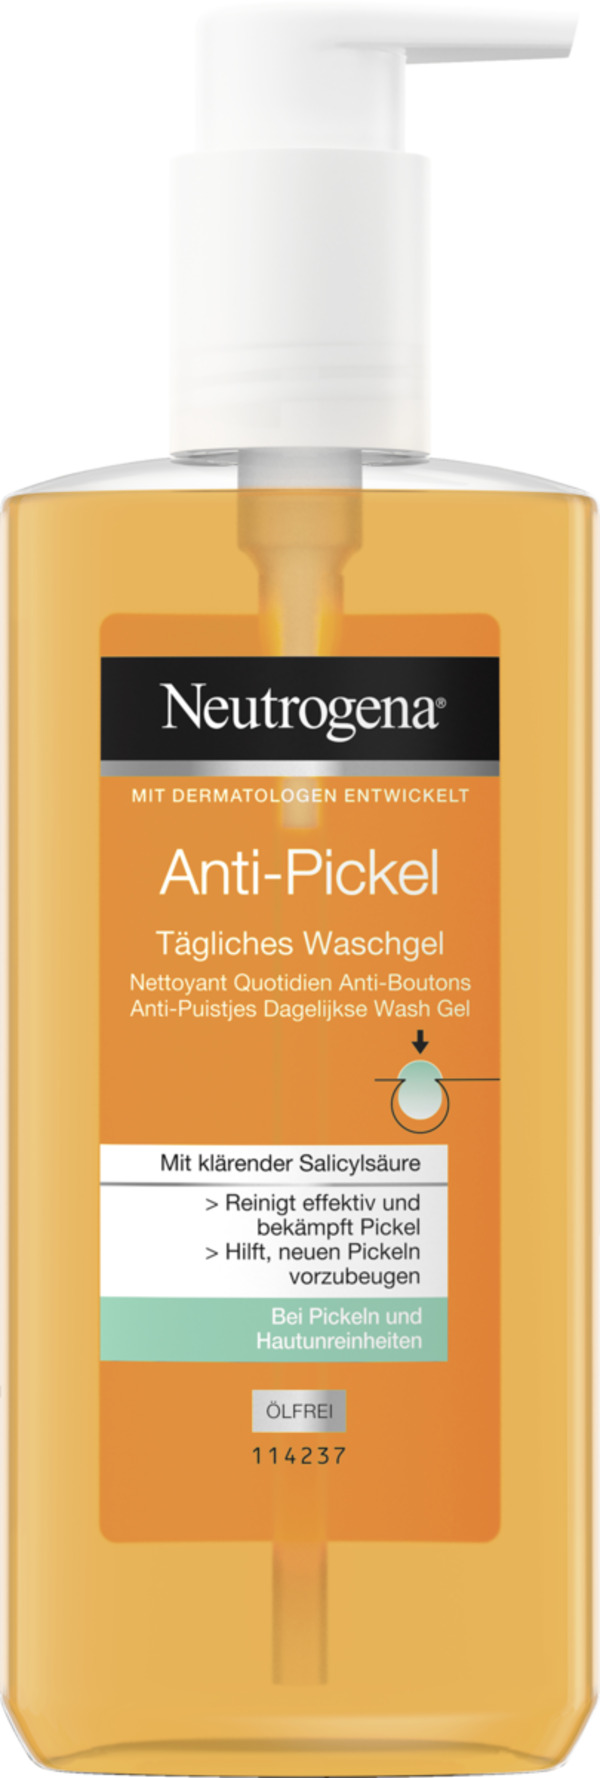 Bild 1 von Neutrogena Visibly Clear Anti-Pickel ölfreies Waschgel 2.50 EUR/100 ml